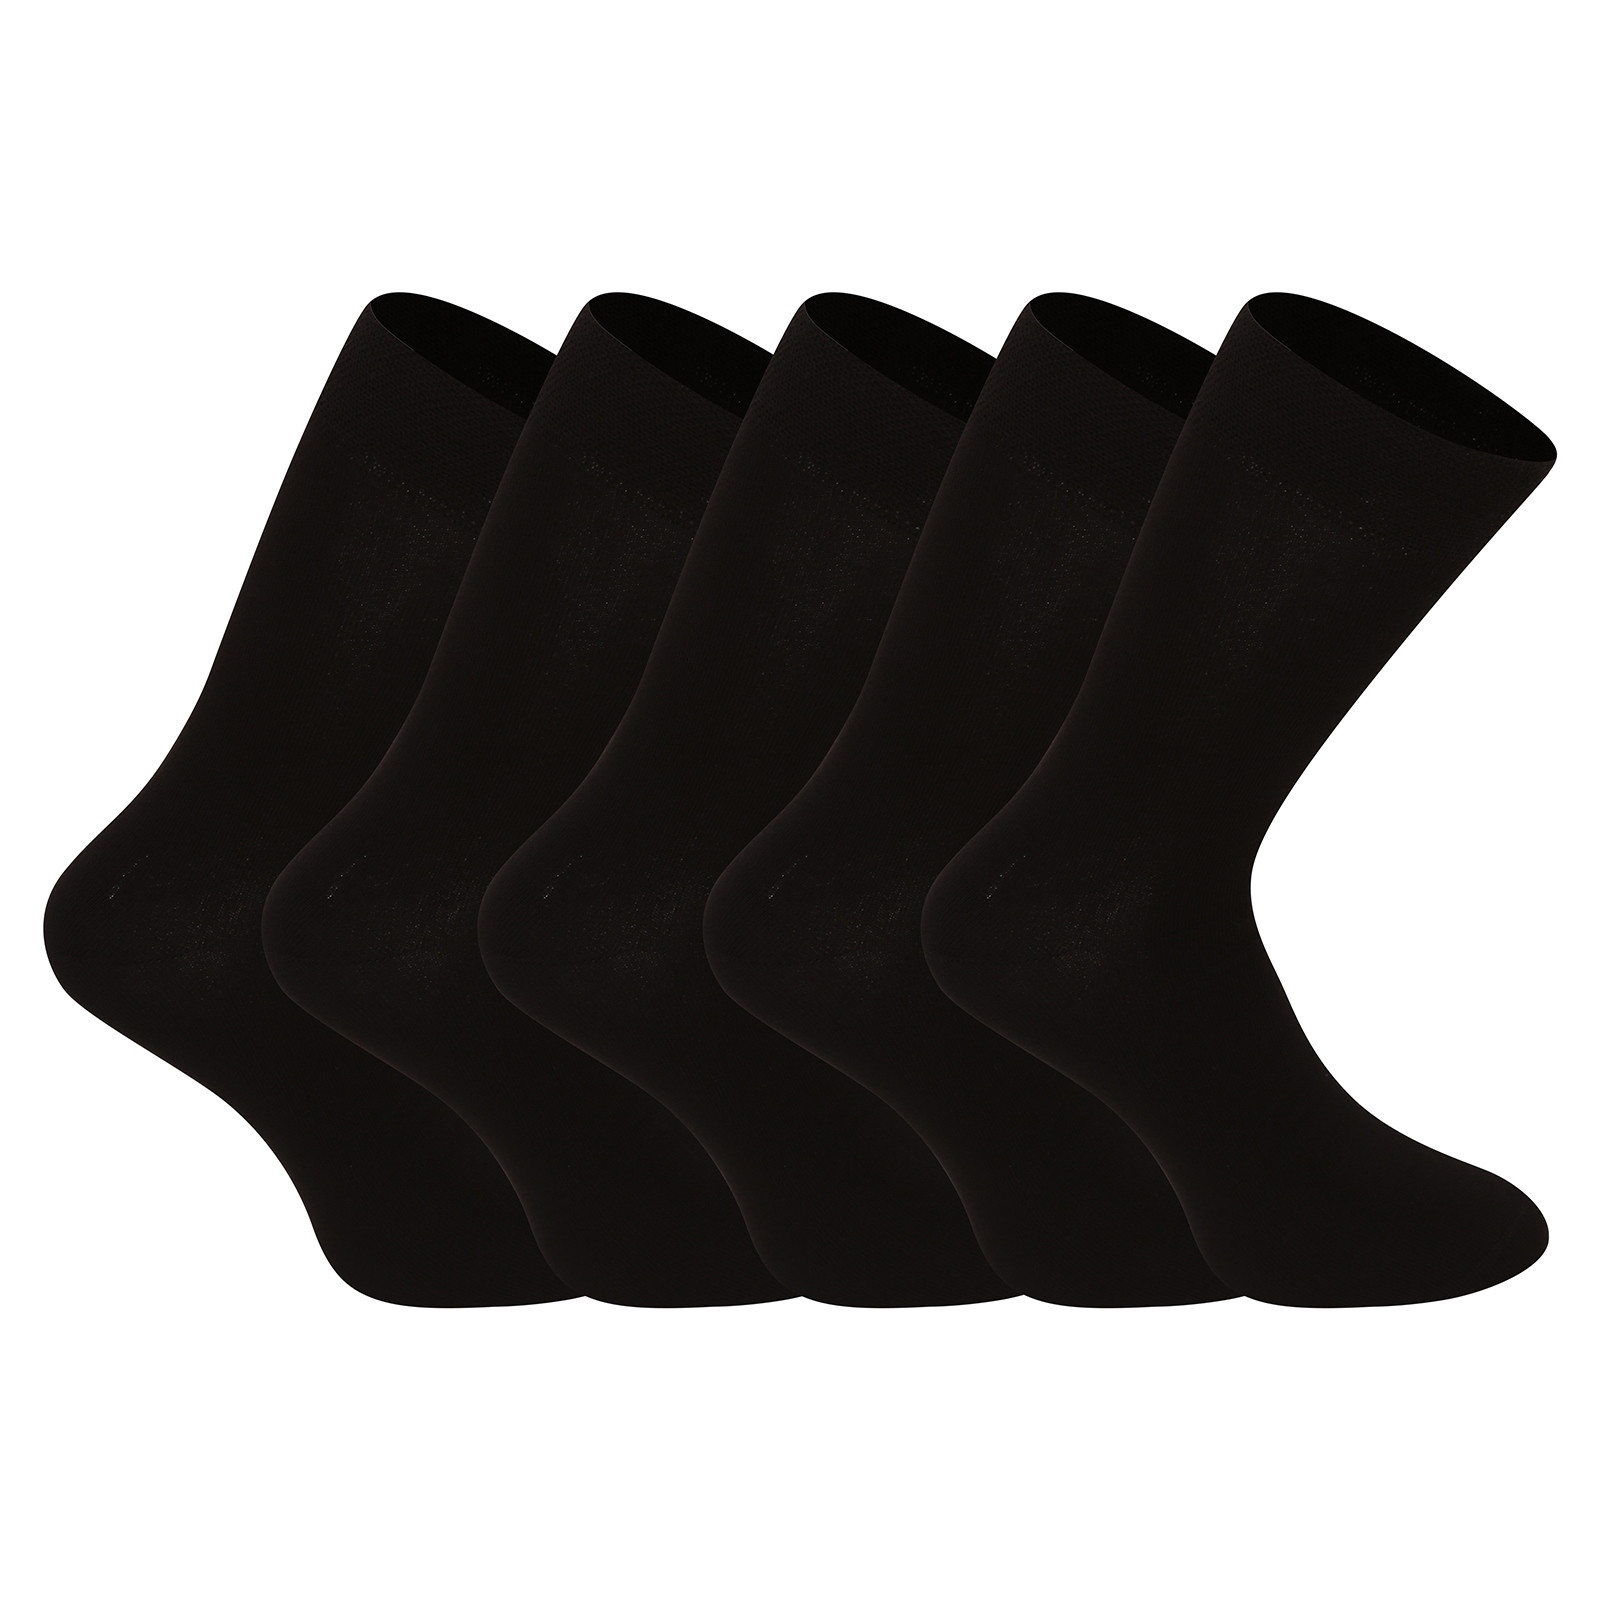 5PACK socks Nedeto high bamboo black